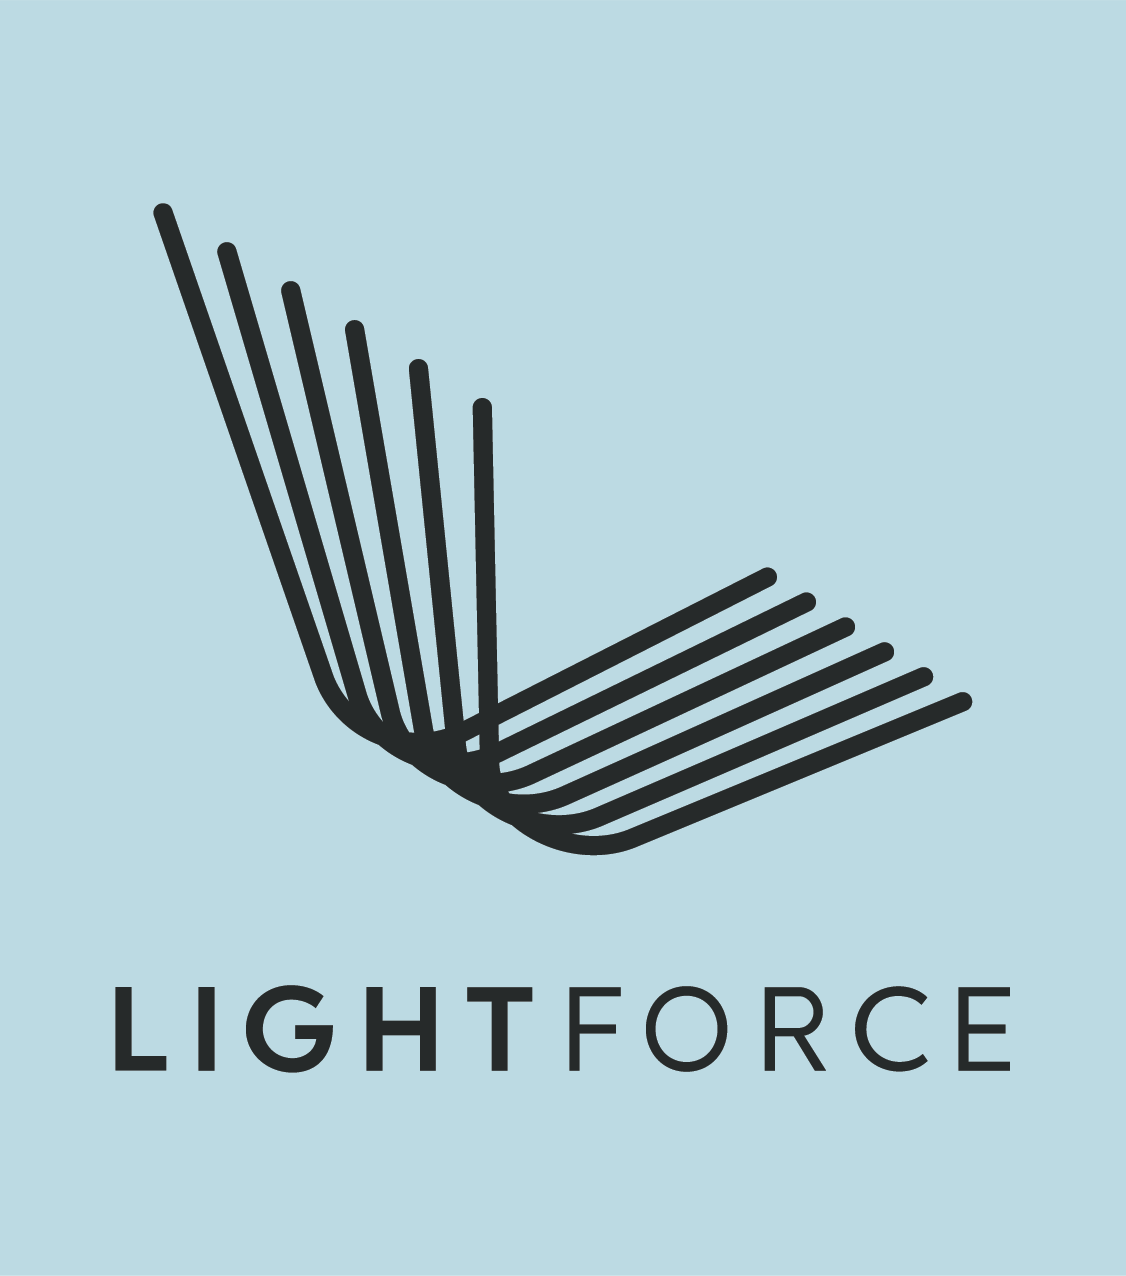 Lightforce-3-mobile